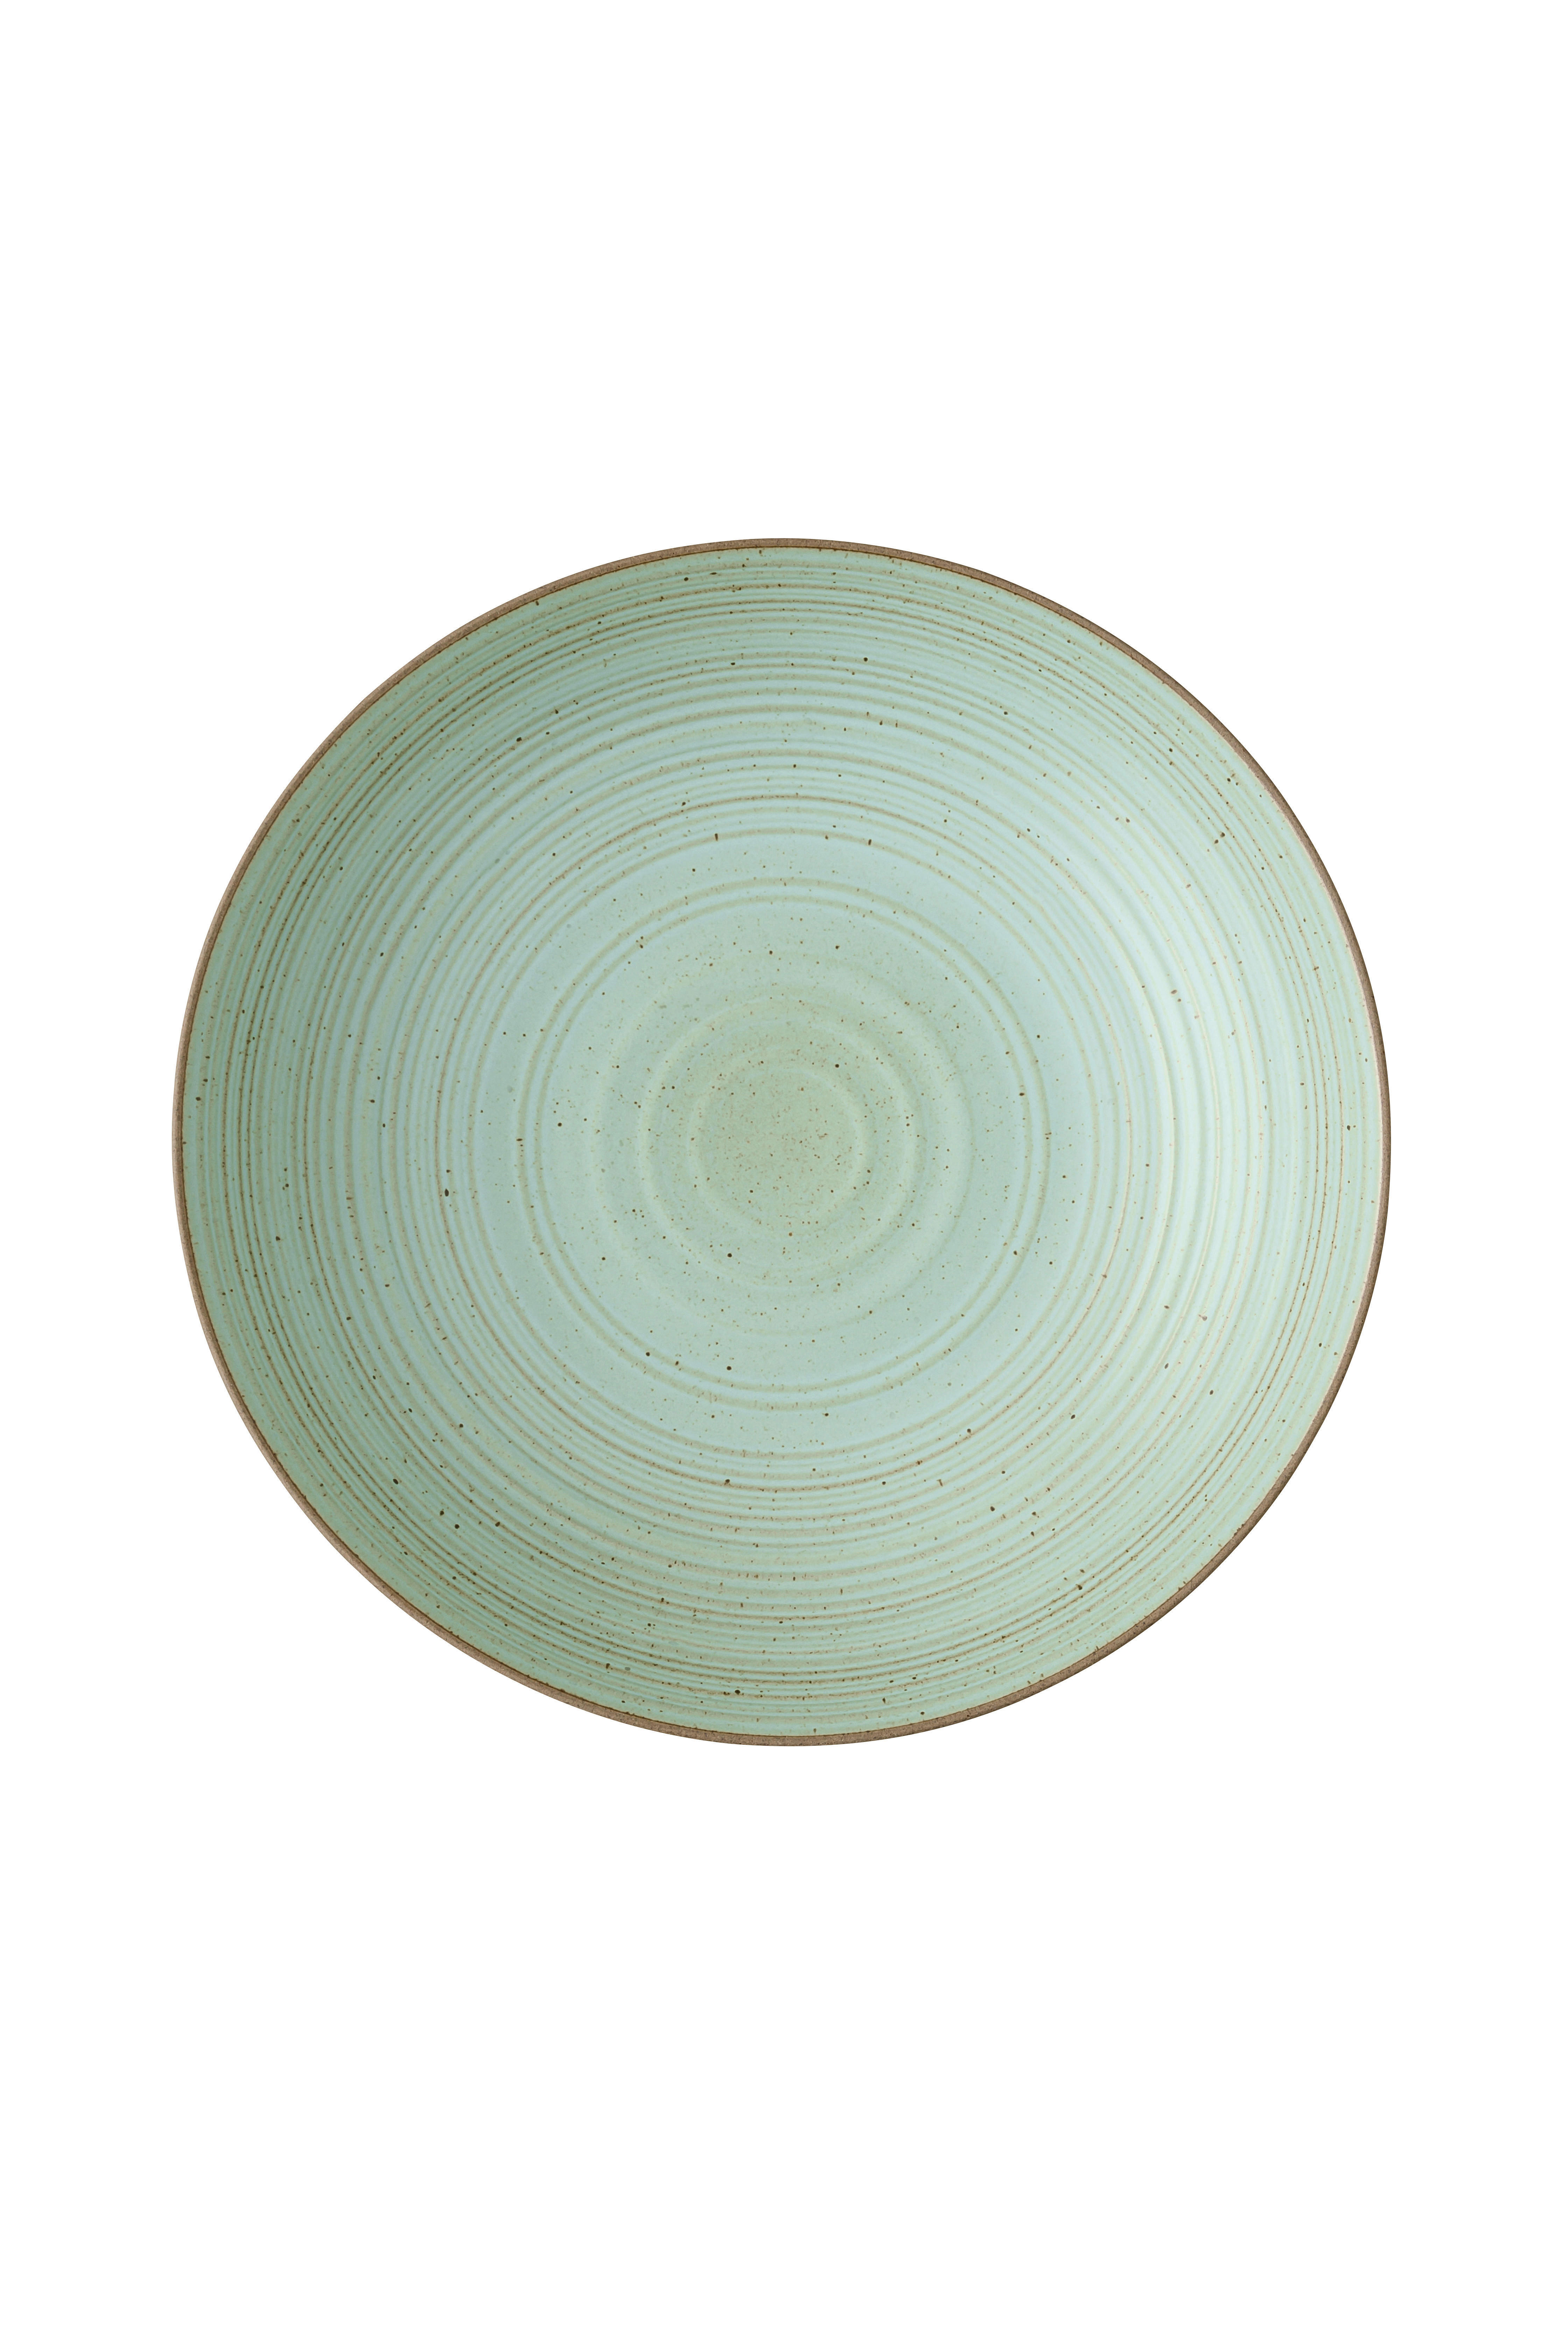 DUBOKI TANJIR  23 cm        - zelena, Osnovno, keramika (23cm) - Rosenthal